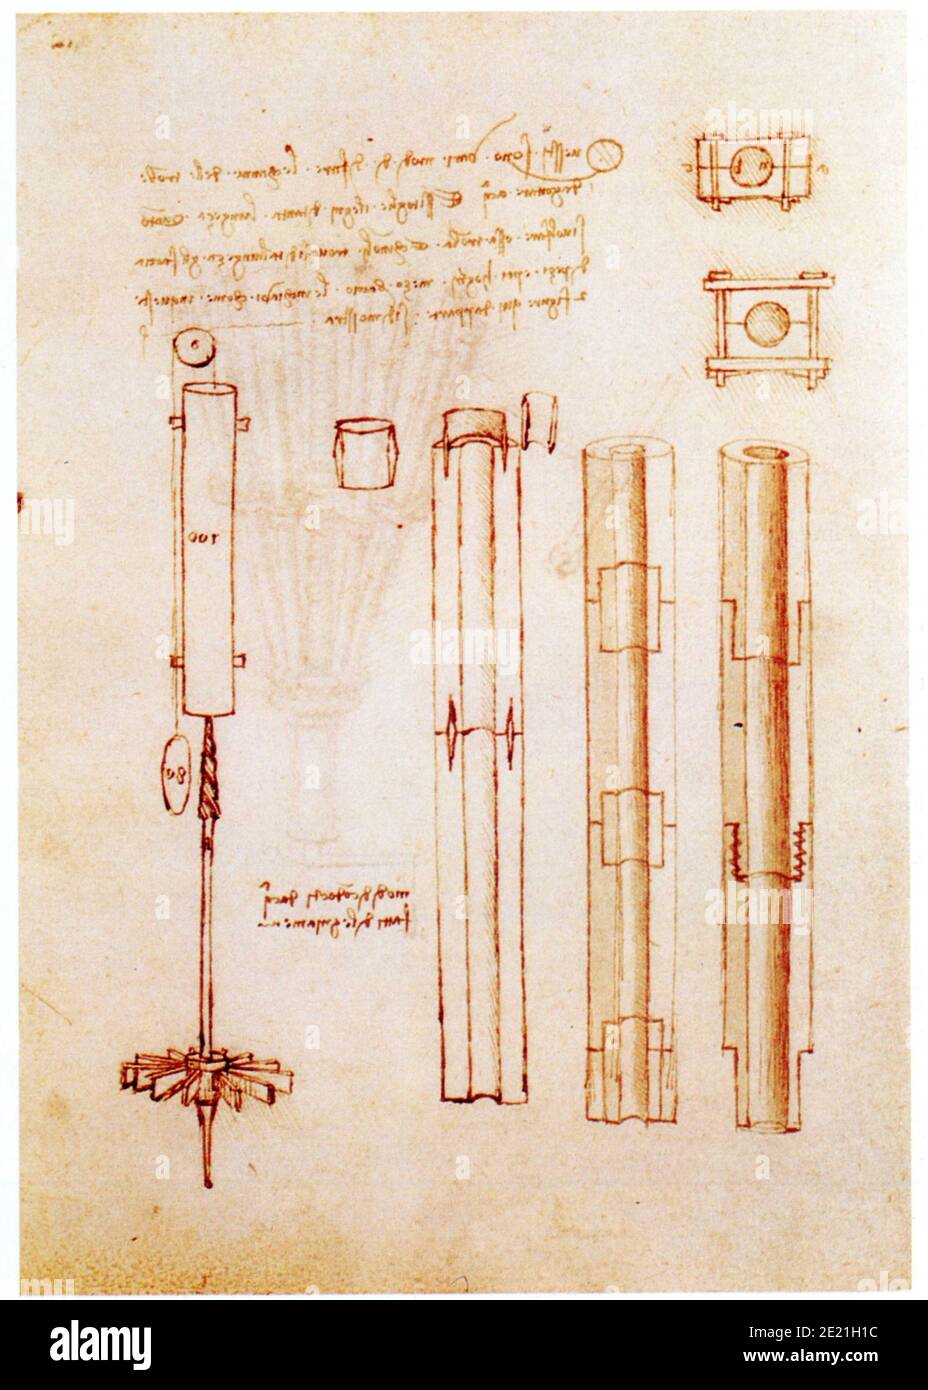 Leonardo da Vinci. 1452-1519. Tuyaux de bois modulaires pour conduites d'eau Foto Stock